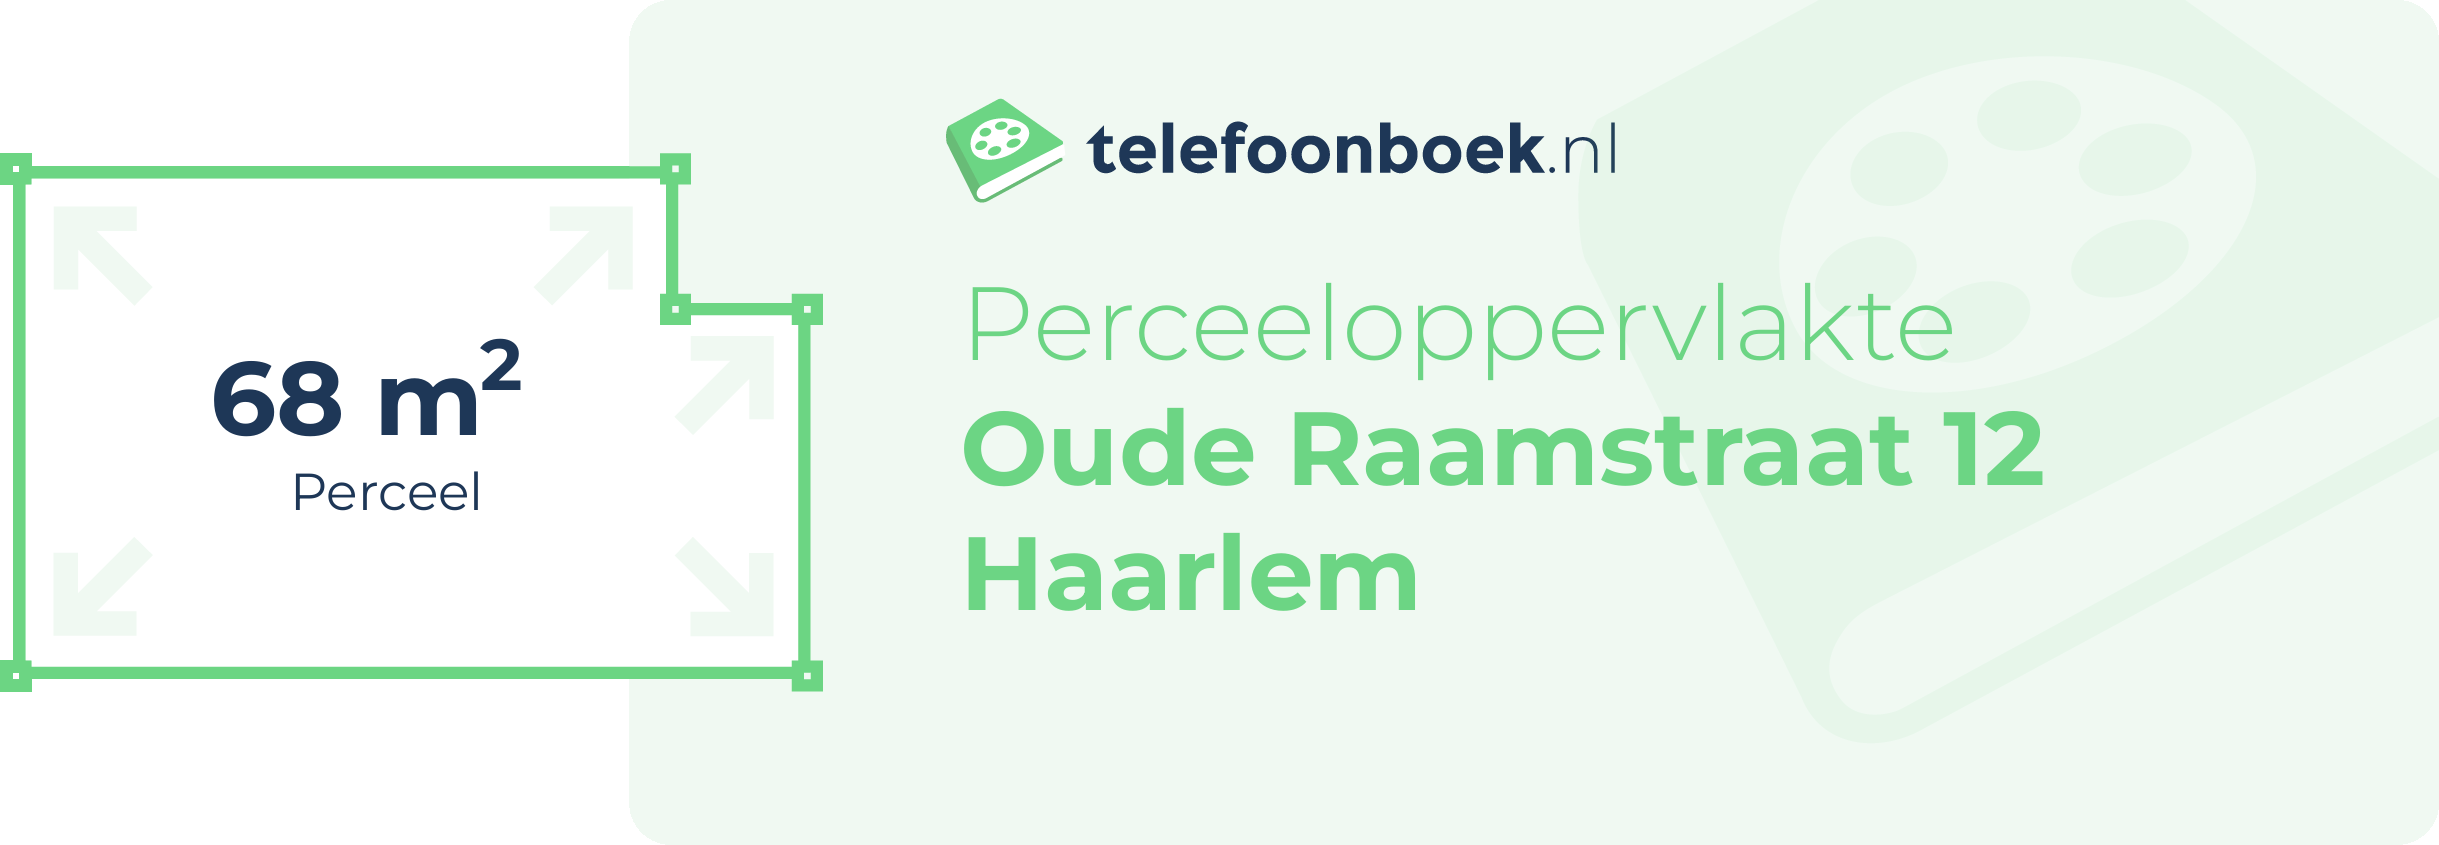 Perceeloppervlakte Oude Raamstraat 12 Haarlem